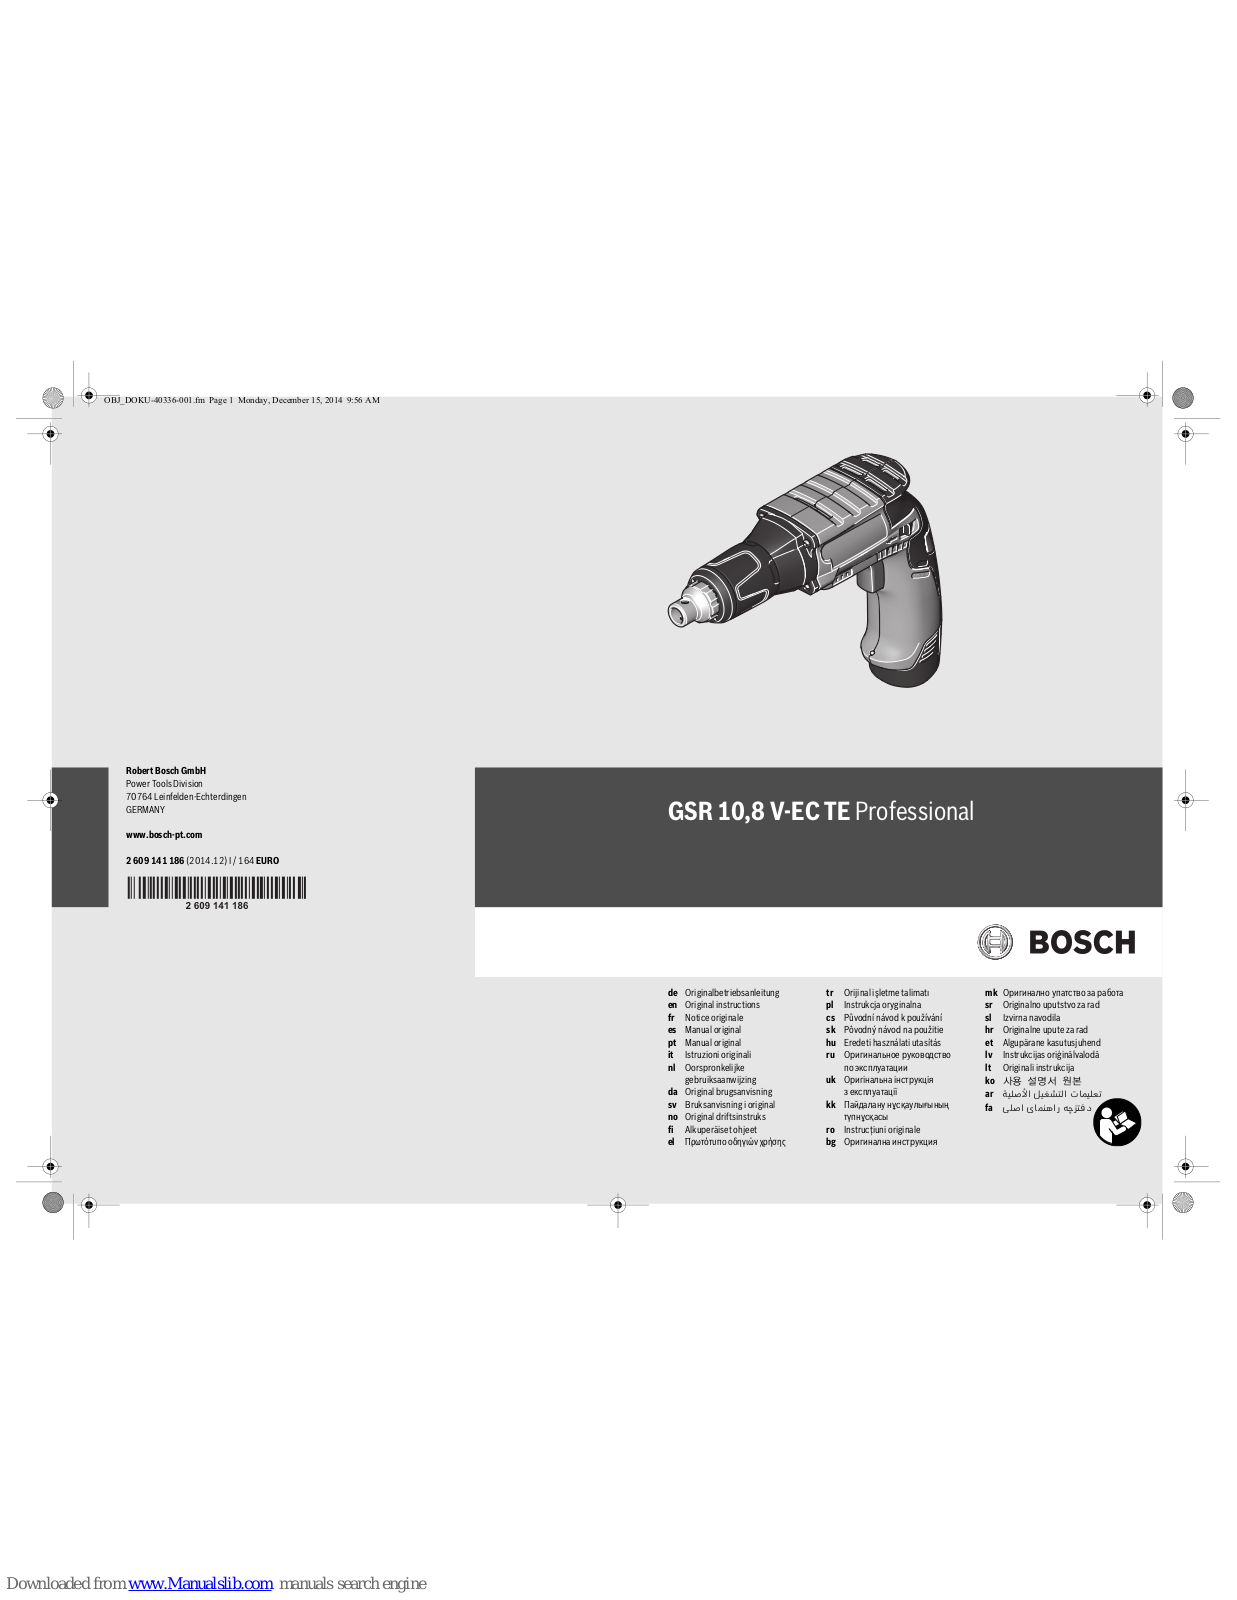 Bosch GSR 10.8 V-EC TE Professional Original Instructions Manual